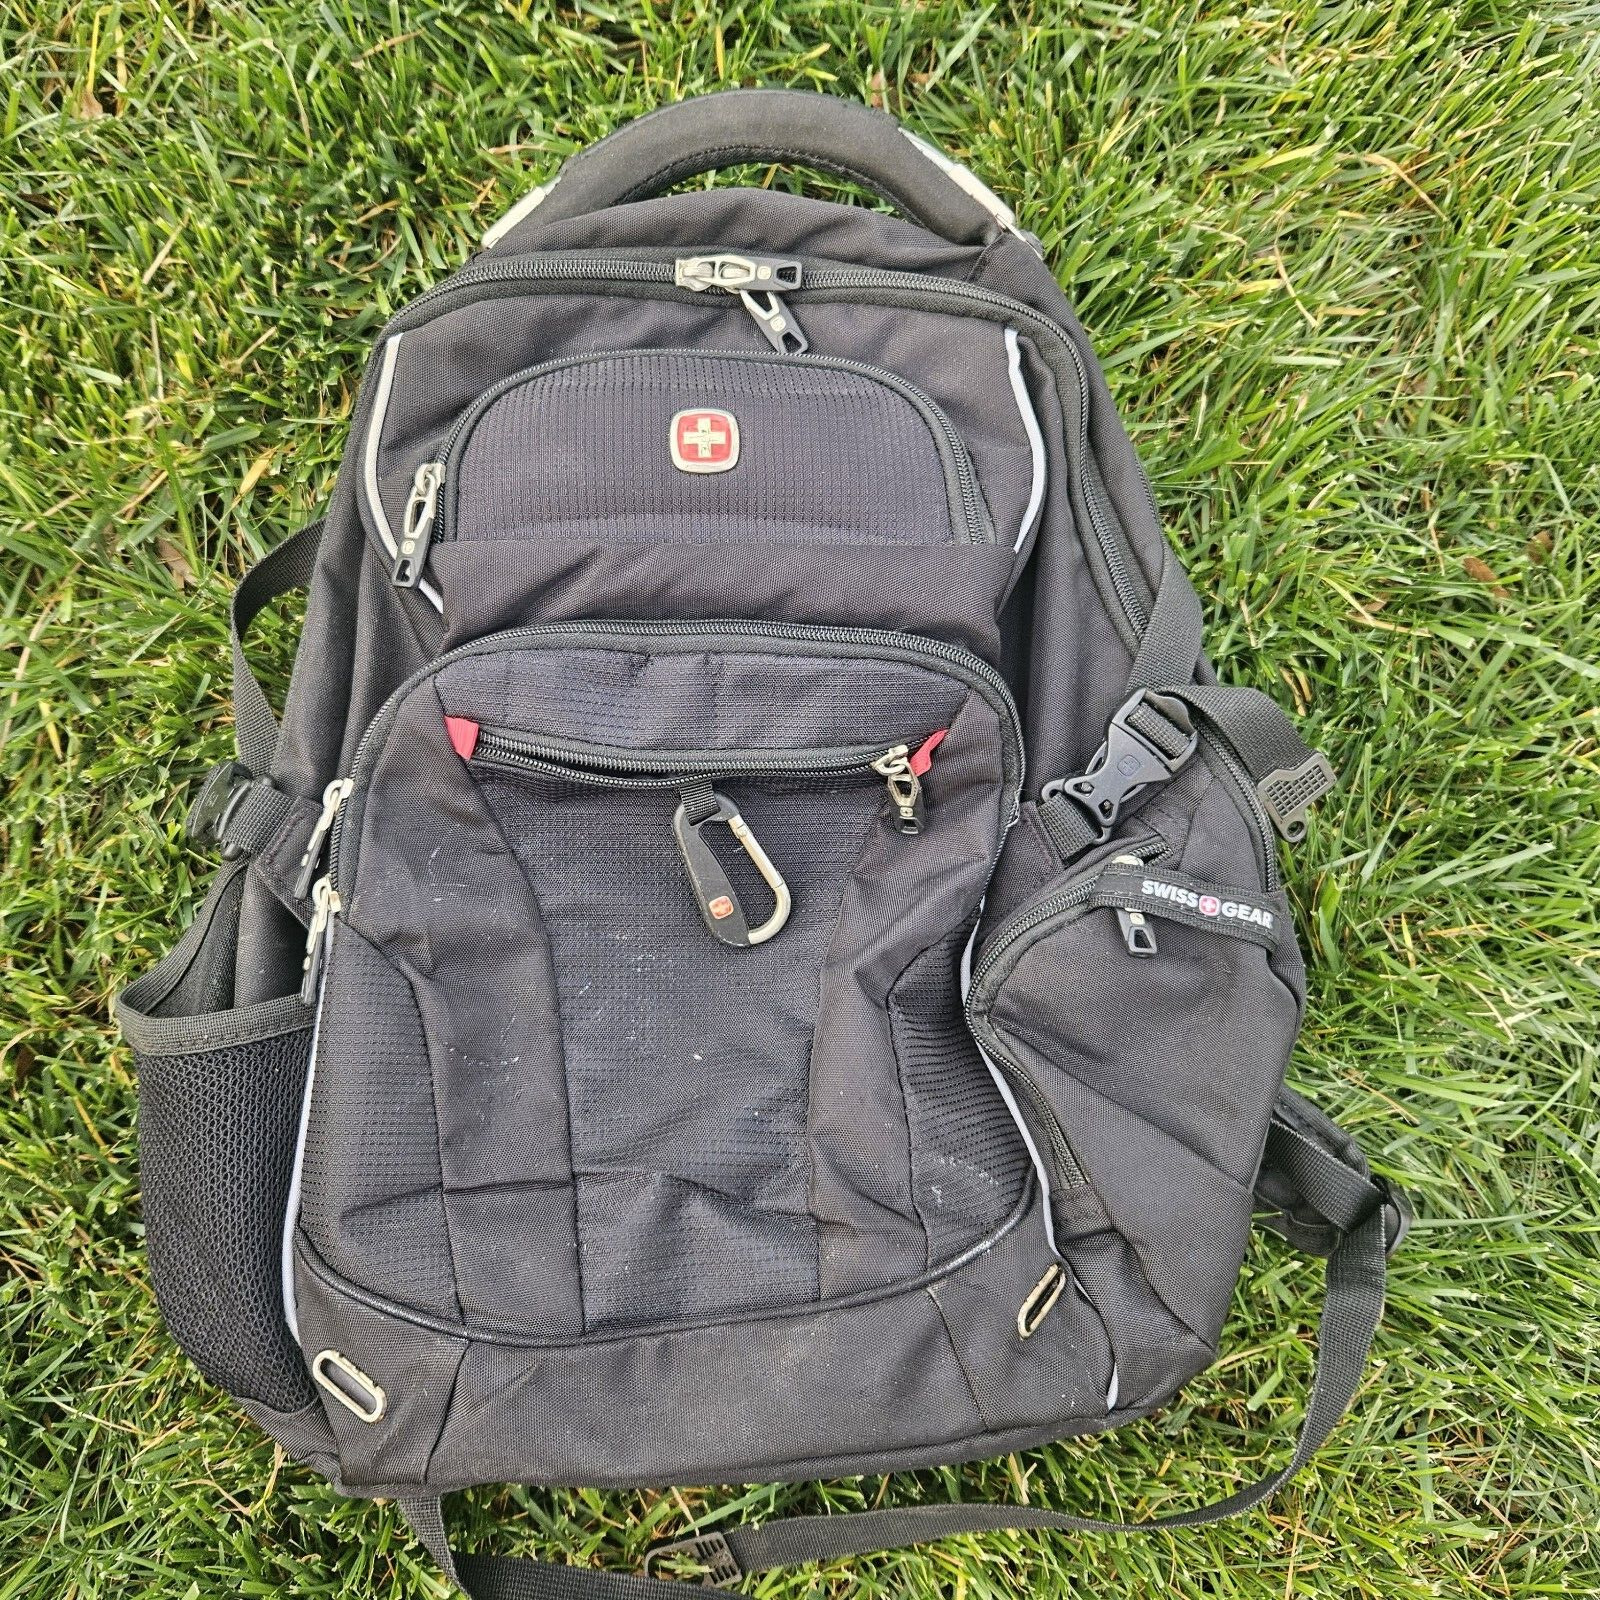 Swiss Gear Scansmart Backpack 17 Laptop TSA Friendly Hvy Duty Multi Compartment